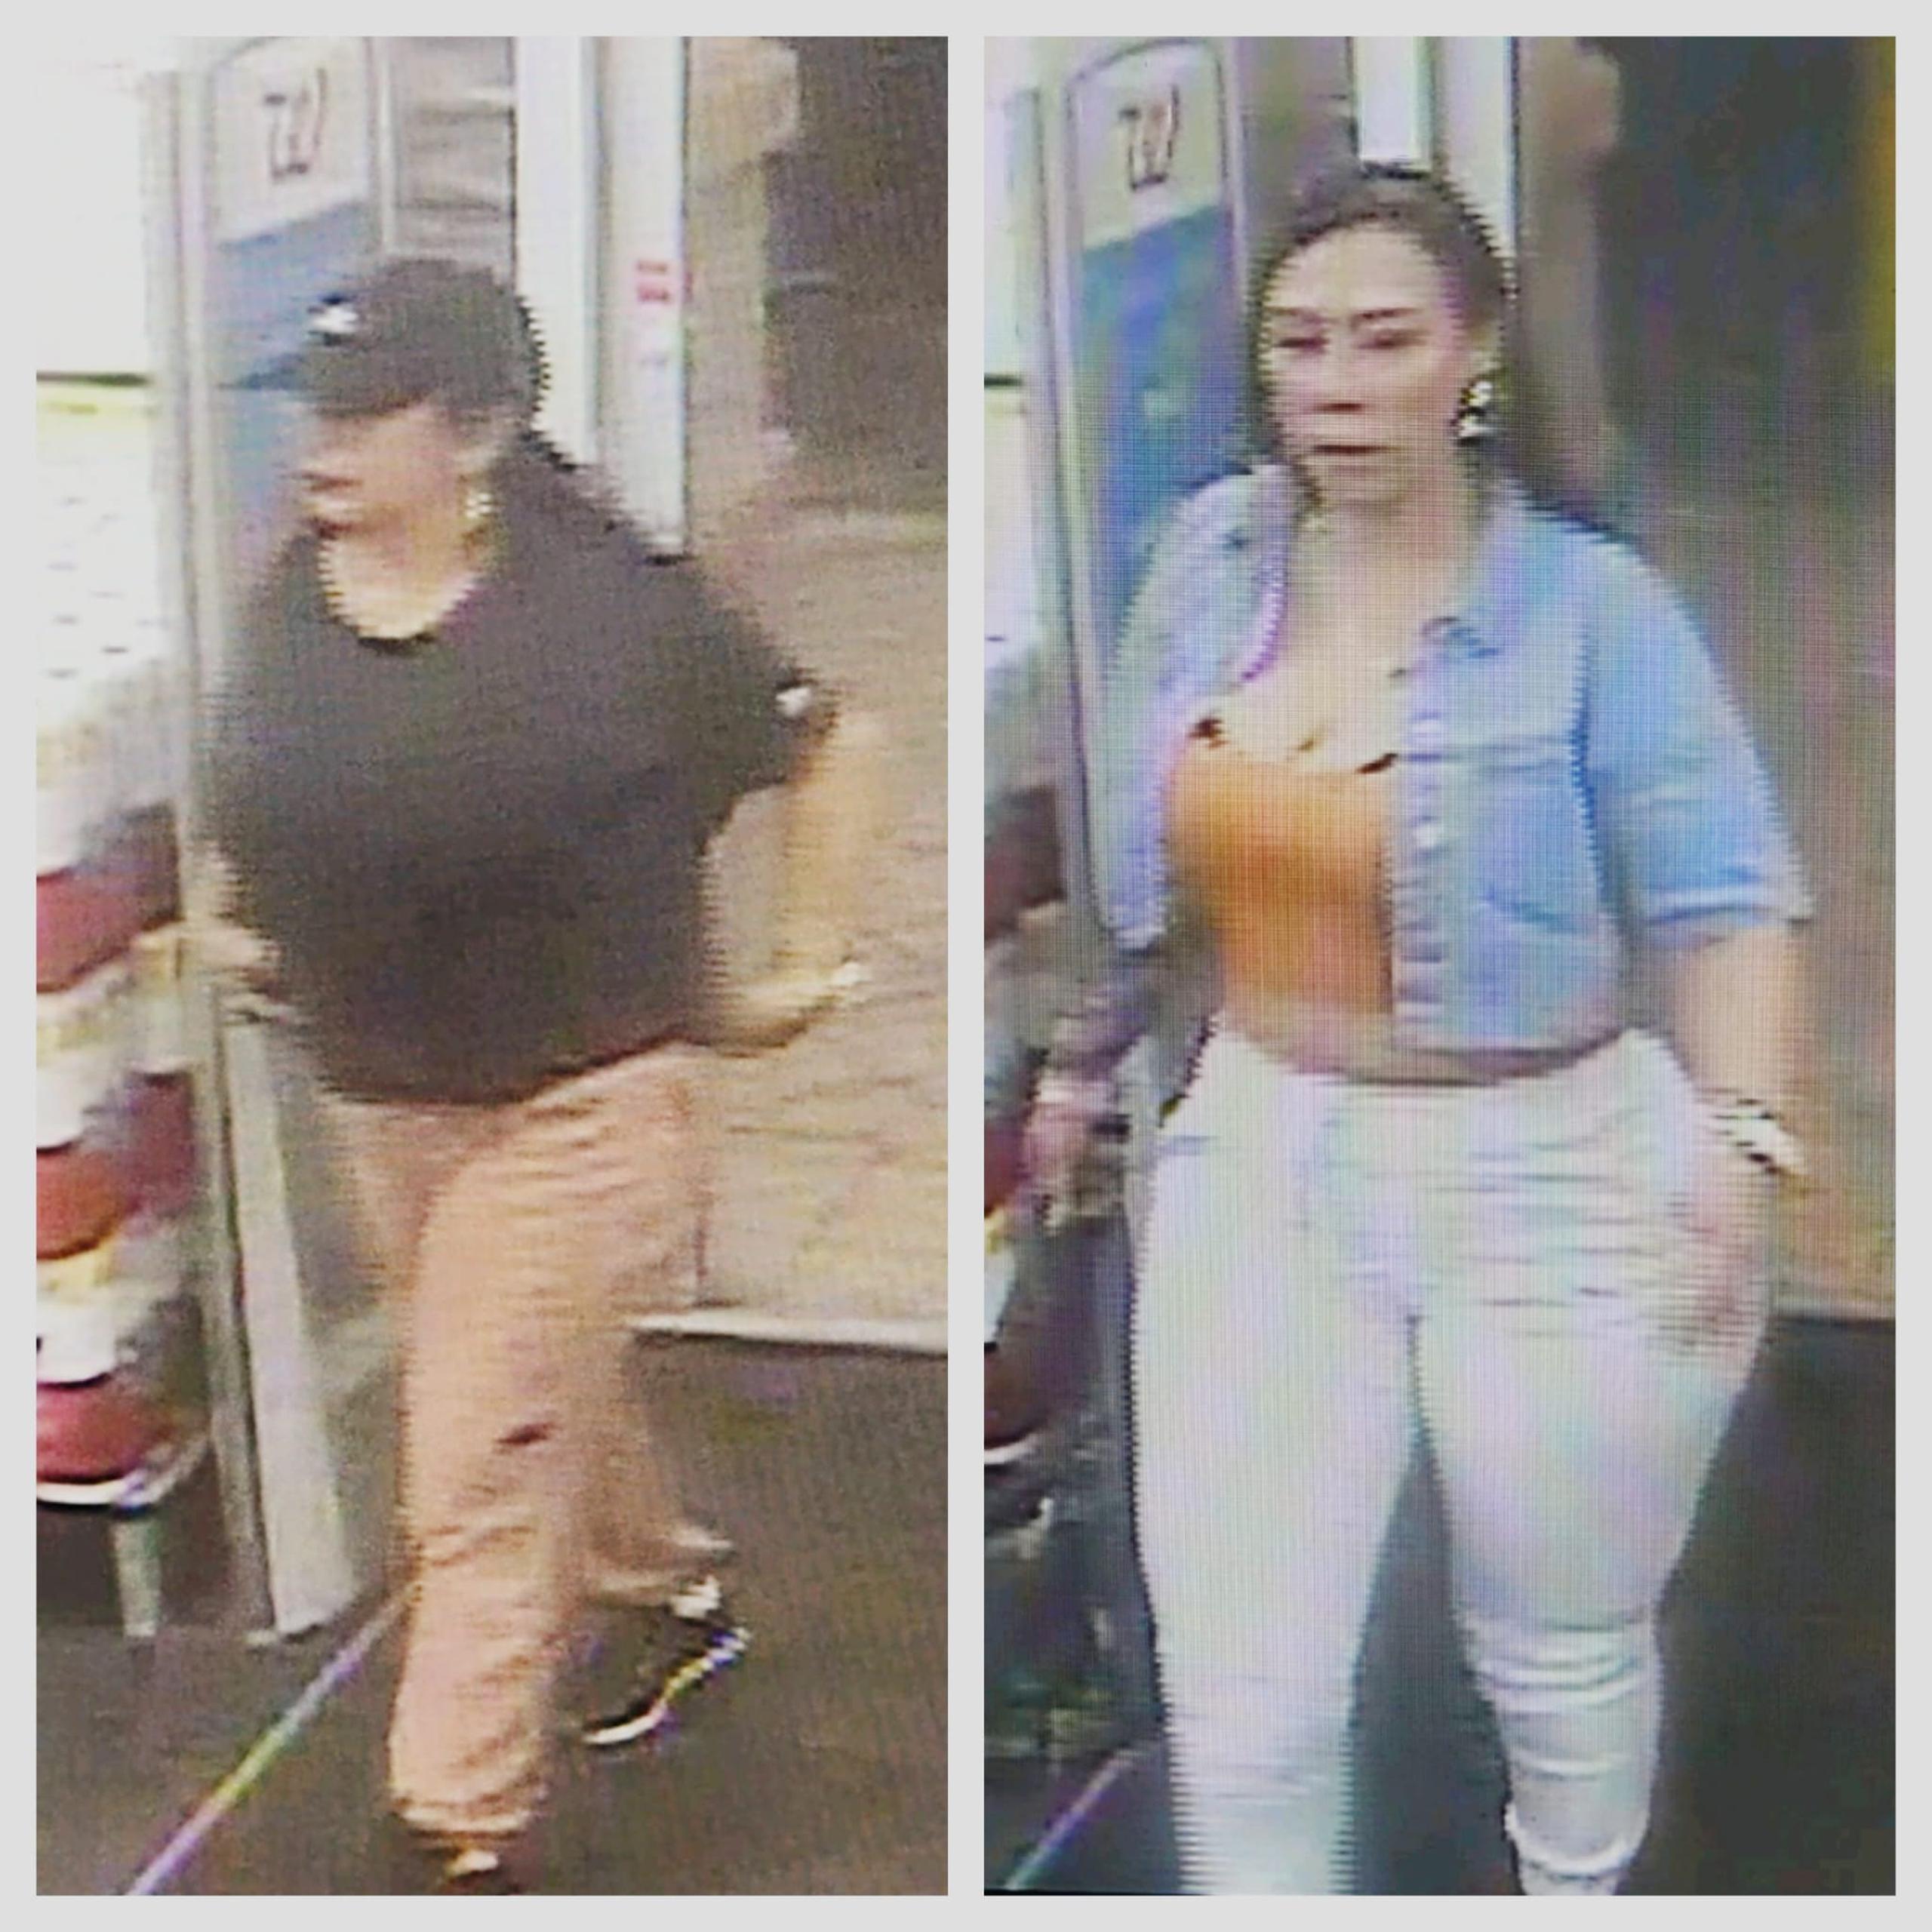 Las autoridades solicitaron ayuda que conduzca a la identificación y arresto de las dos sospechosas de apropiarse ilegalmente de mercancía de la farmacia Walgreens, en Arroyo, valorada en $1,311.55.